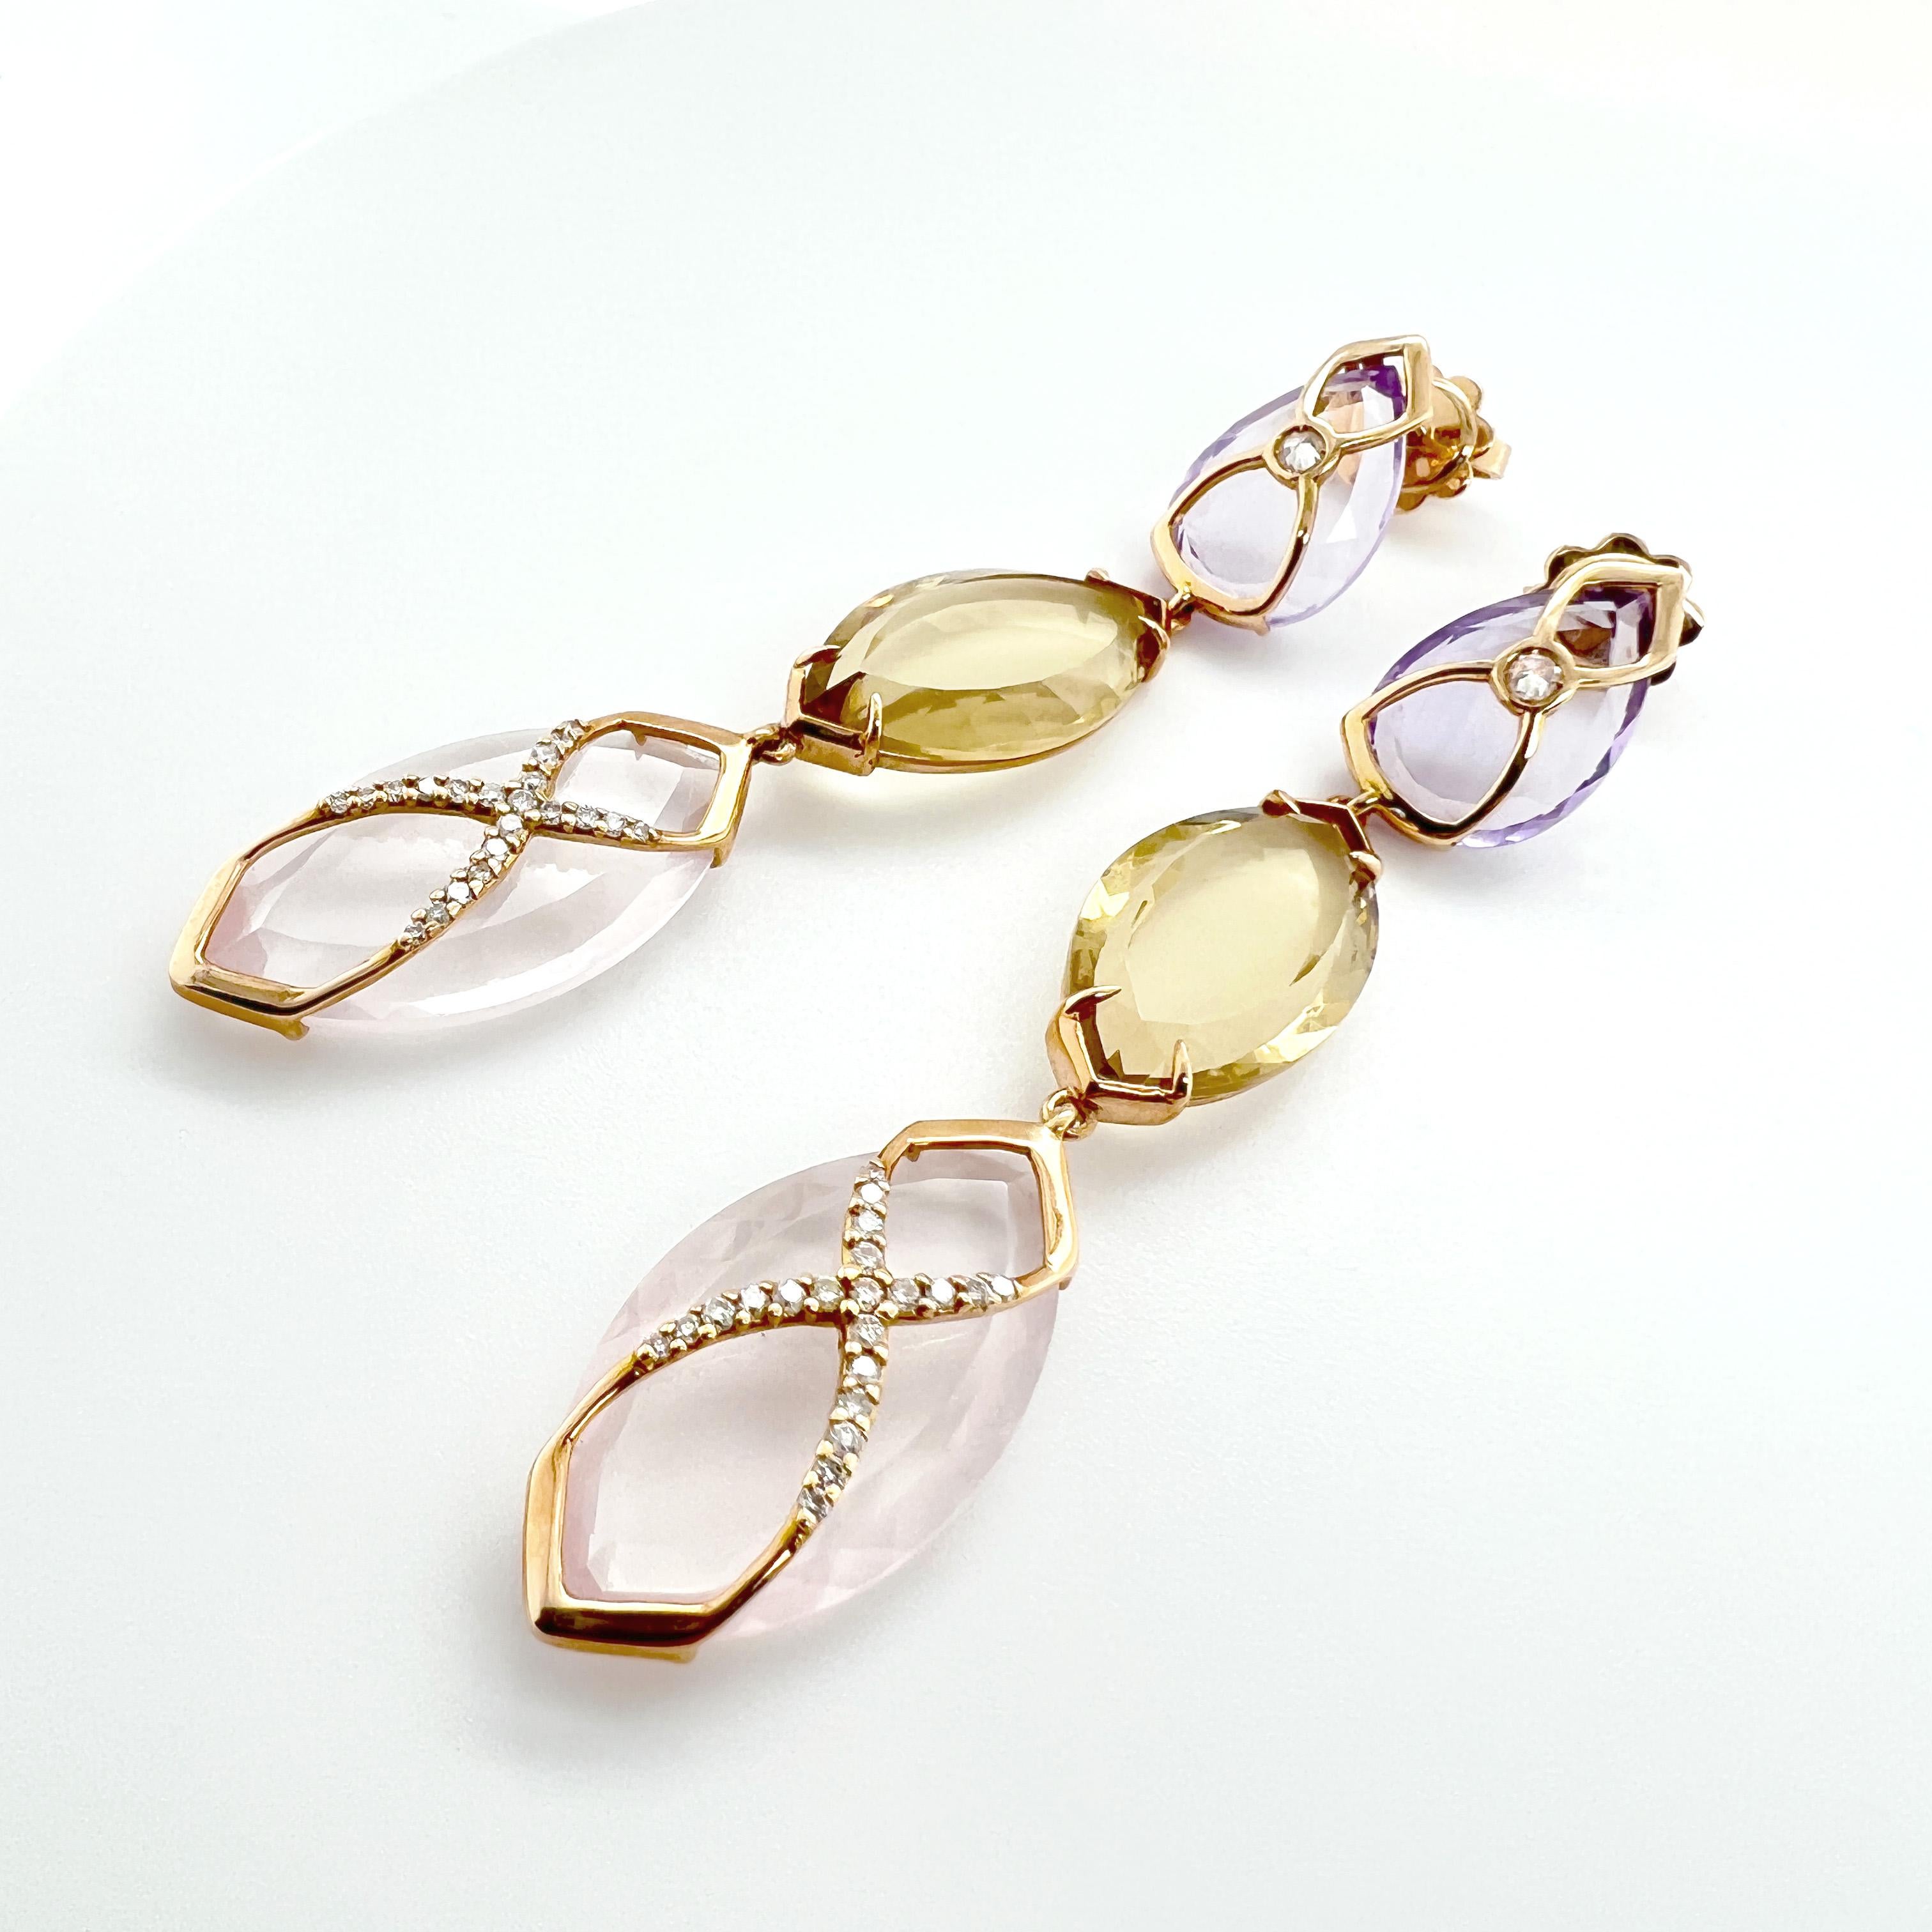 Ces boucles d'oreilles sont une magnifique combinaison d'or 18KT, de diamants et de pierres précieuses colorées. Le design présente une améthyste en forme de goutte, un quartz citron taillé en navette et un quartz rose taillé en navette, tous